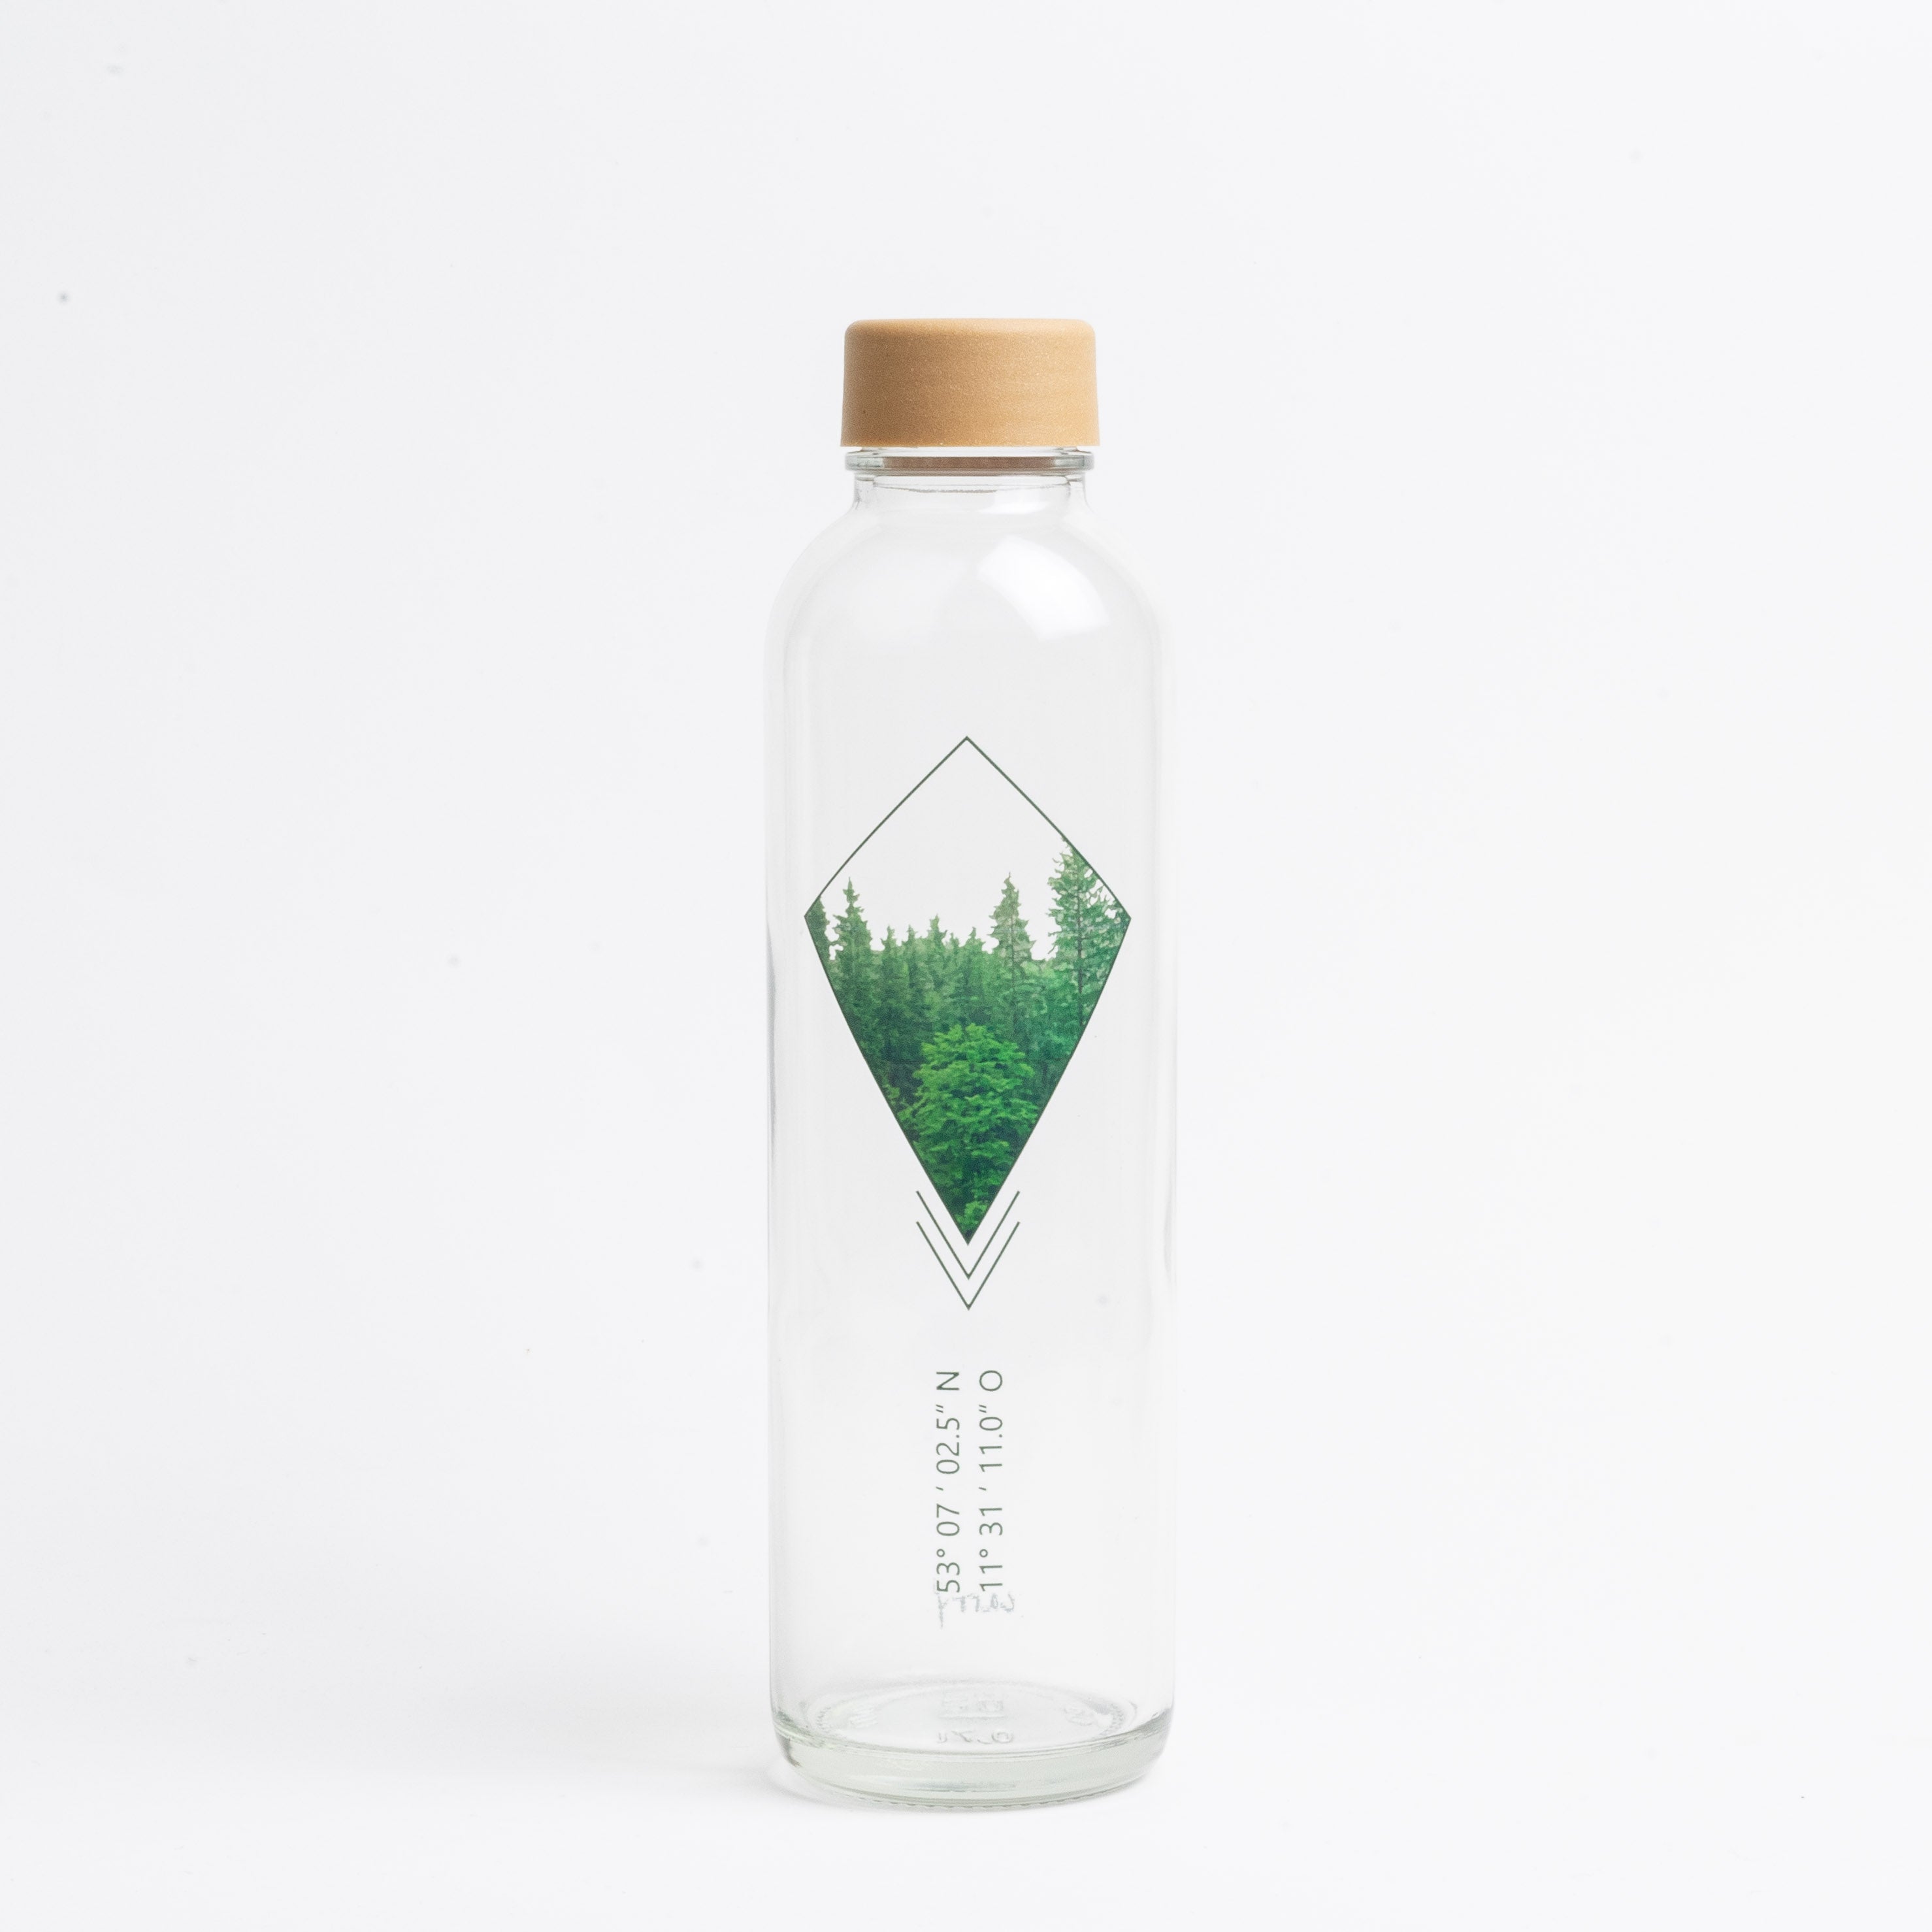 Into The Woods 0,7L CARRY Trinkflasche aus Glas mit Waldmotiv und 5€ Spendenanteil